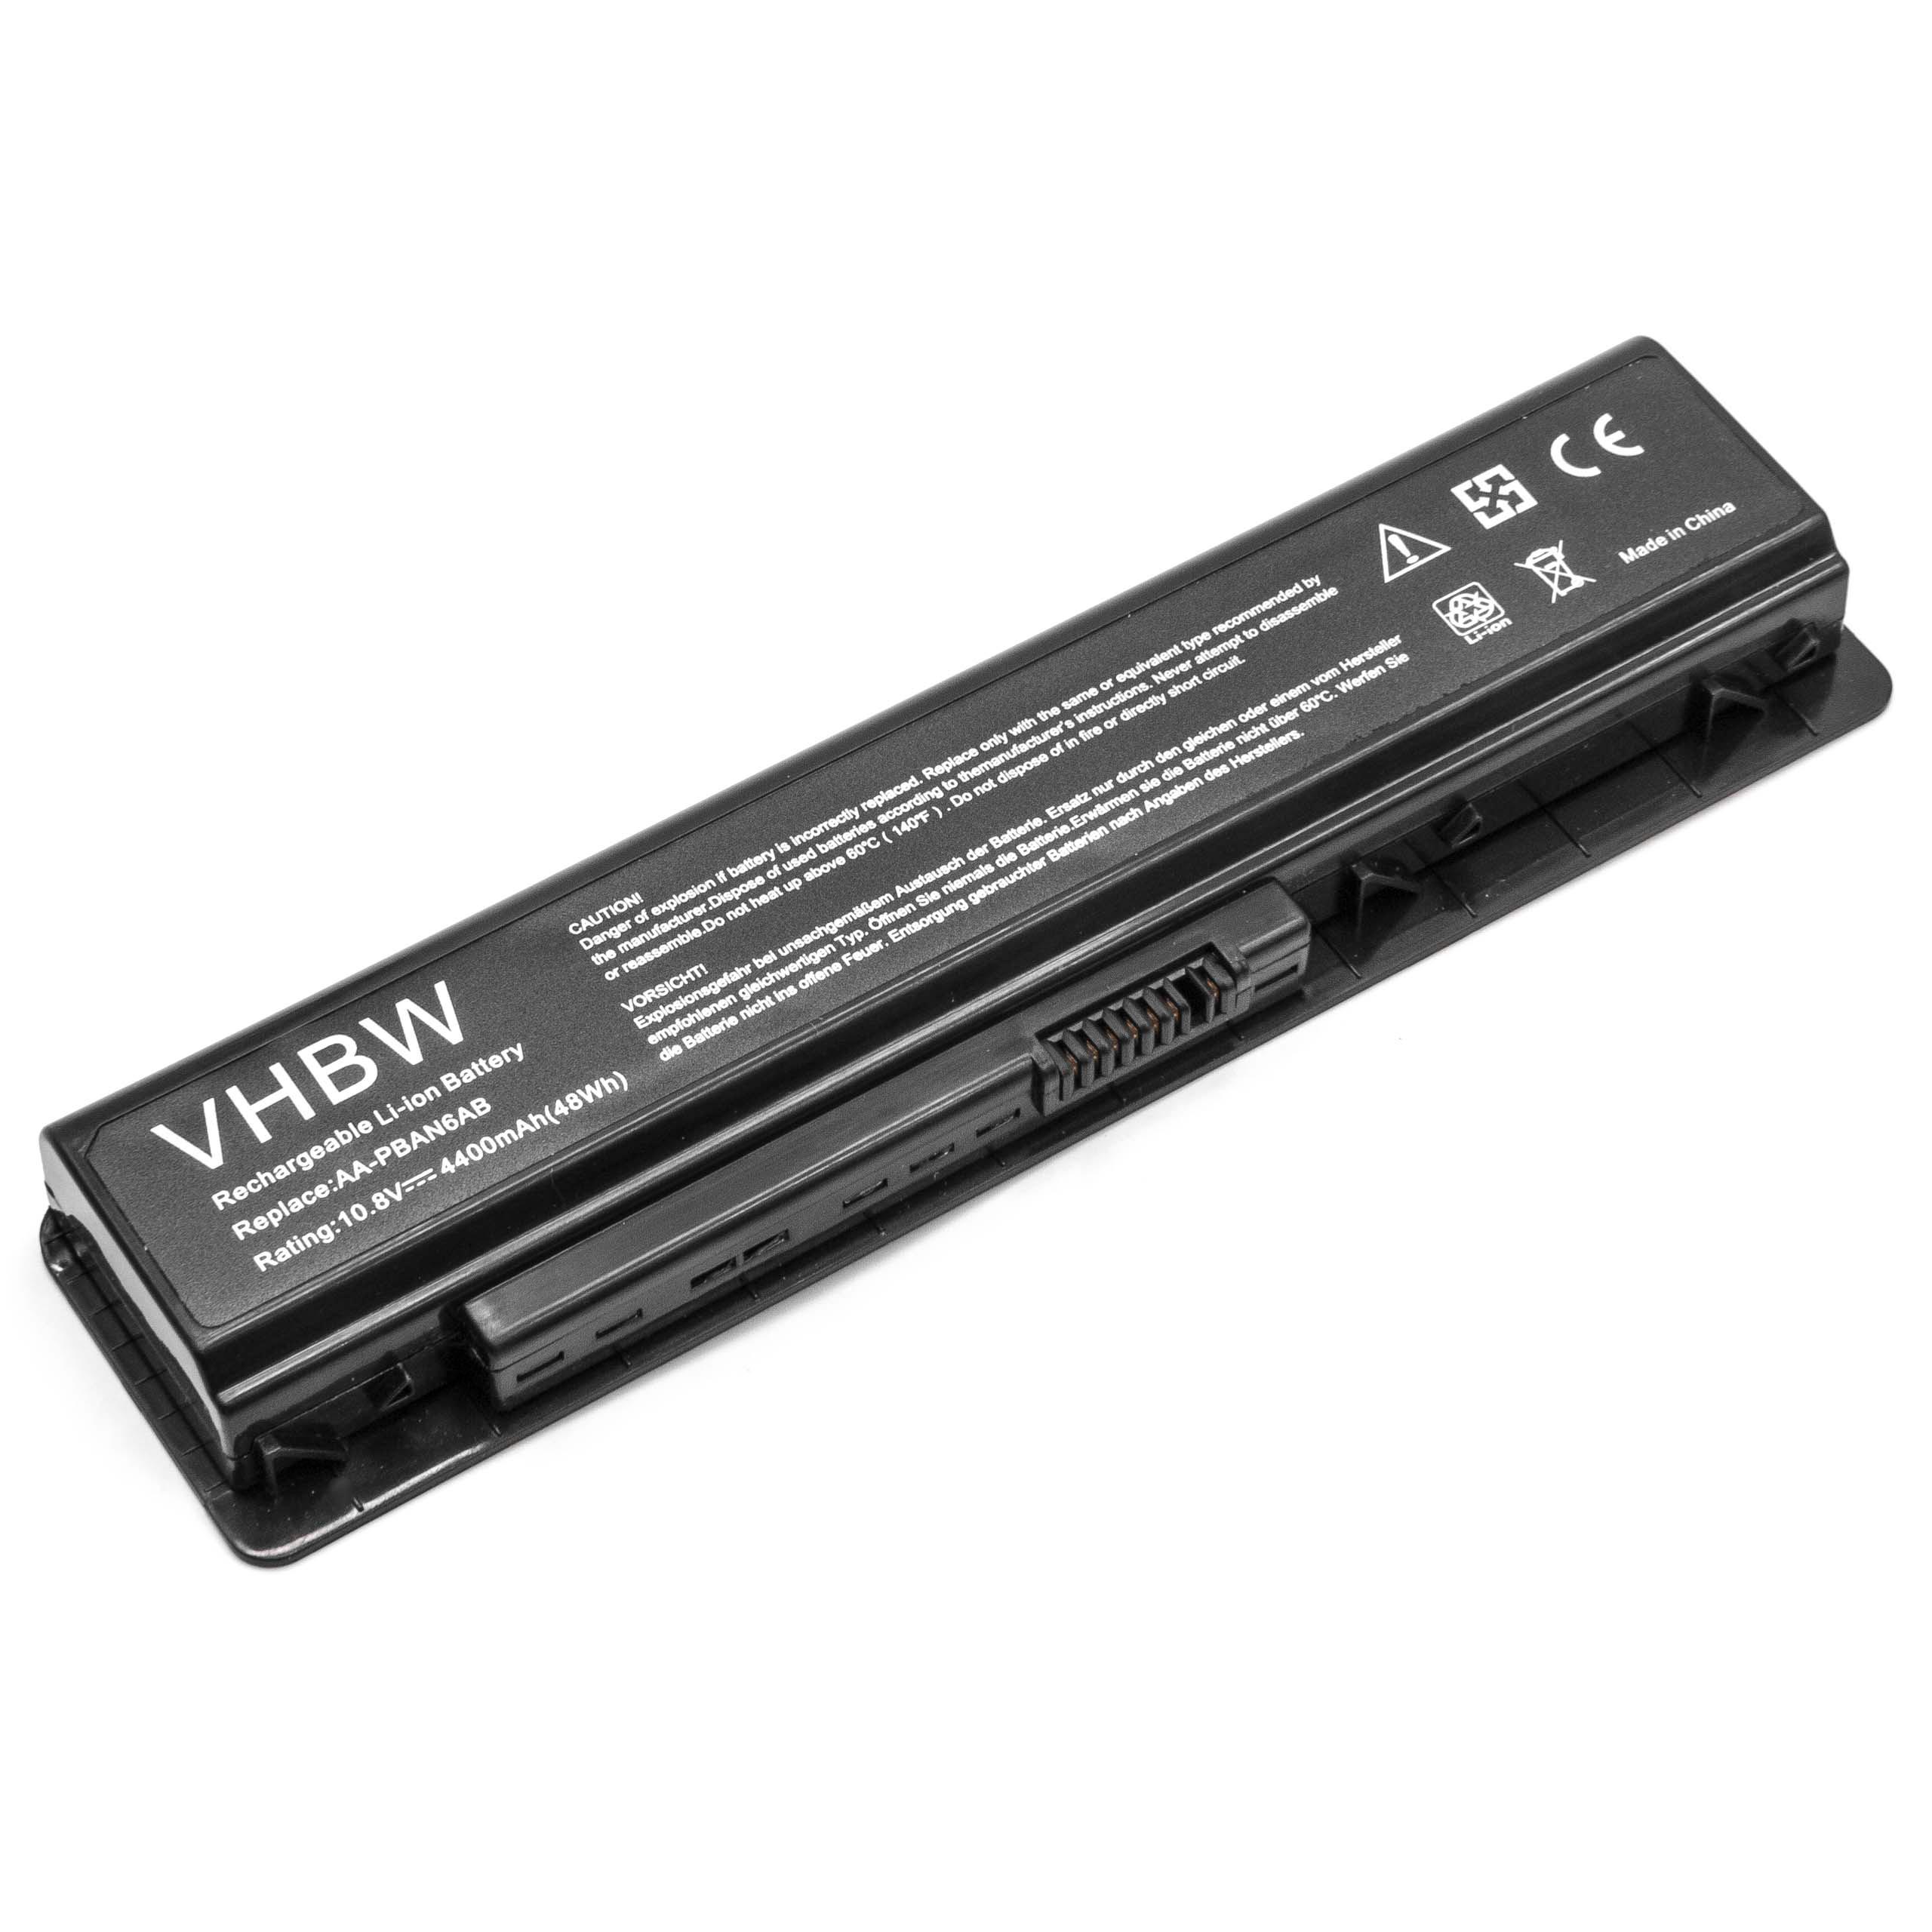 Batterie remplace Samsung AA-PLAN6AB, AA-PBAN6AB pour ordinateur portable - 4400mAh 10,8V Li-ion, noir